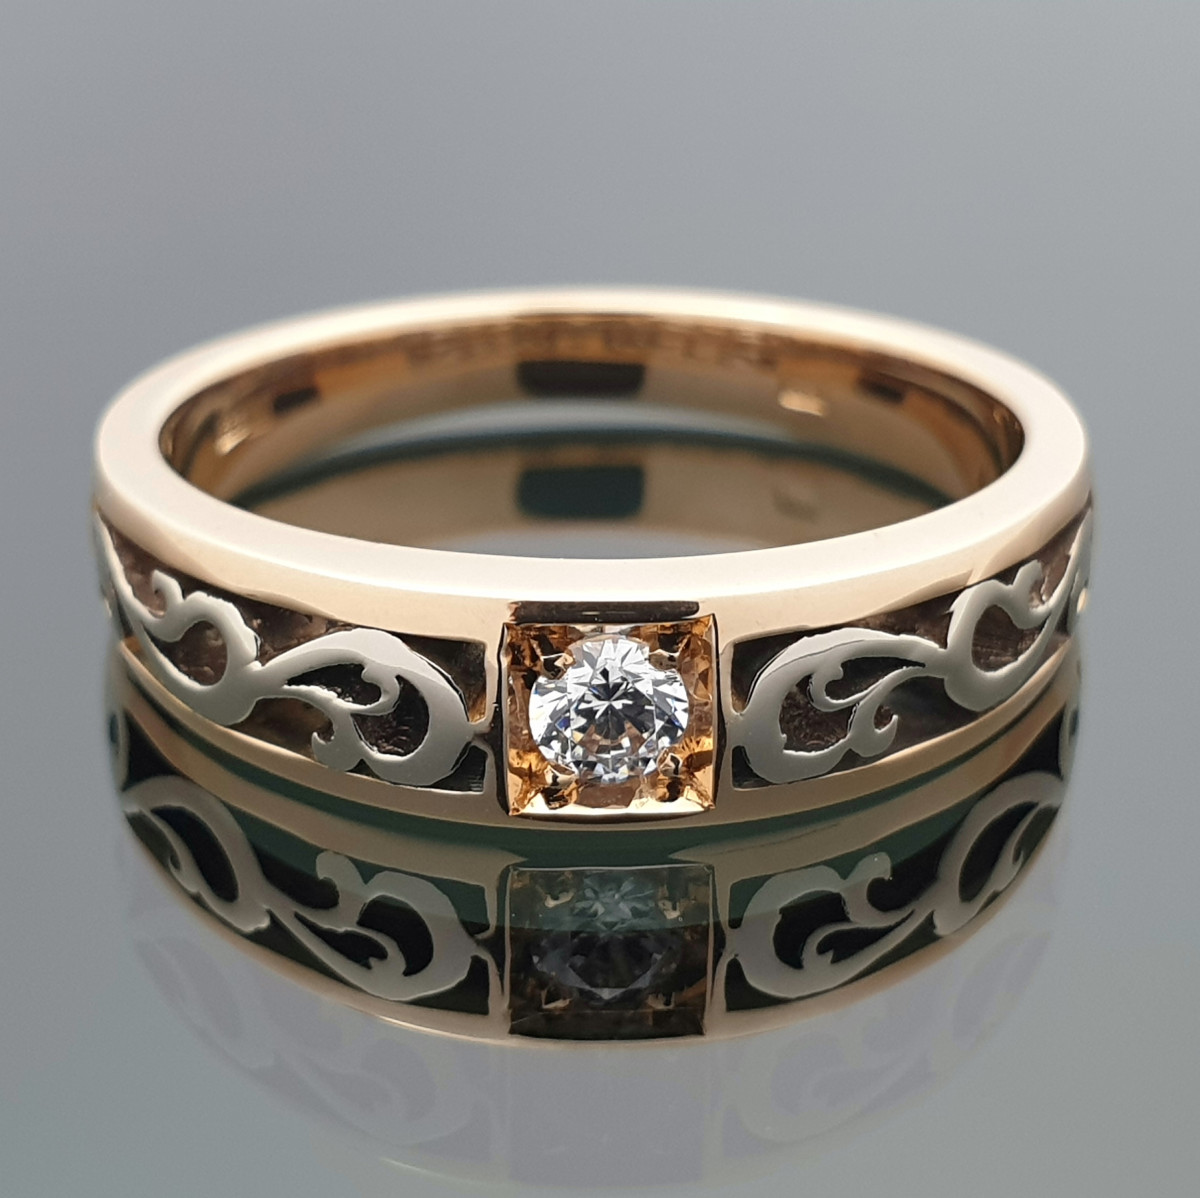 Moteriškas ažūrinis žiedas su akute (1099) 1